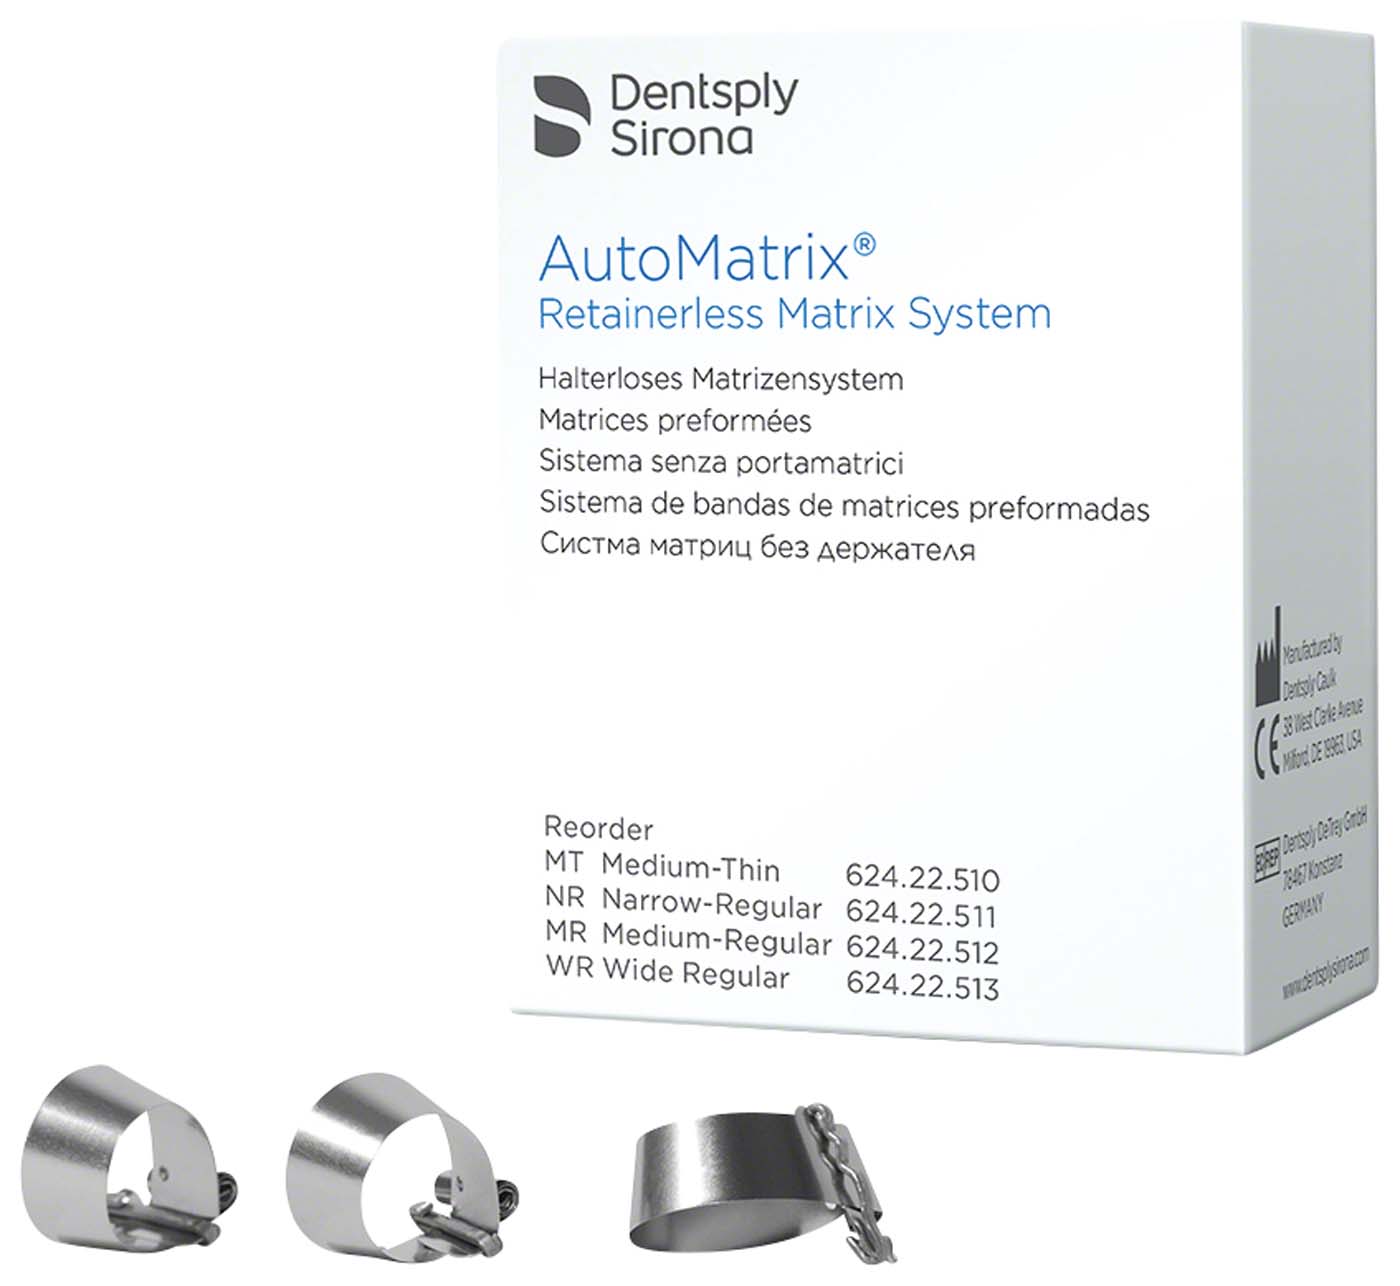 AutoMatrix® Dentsply Sirona